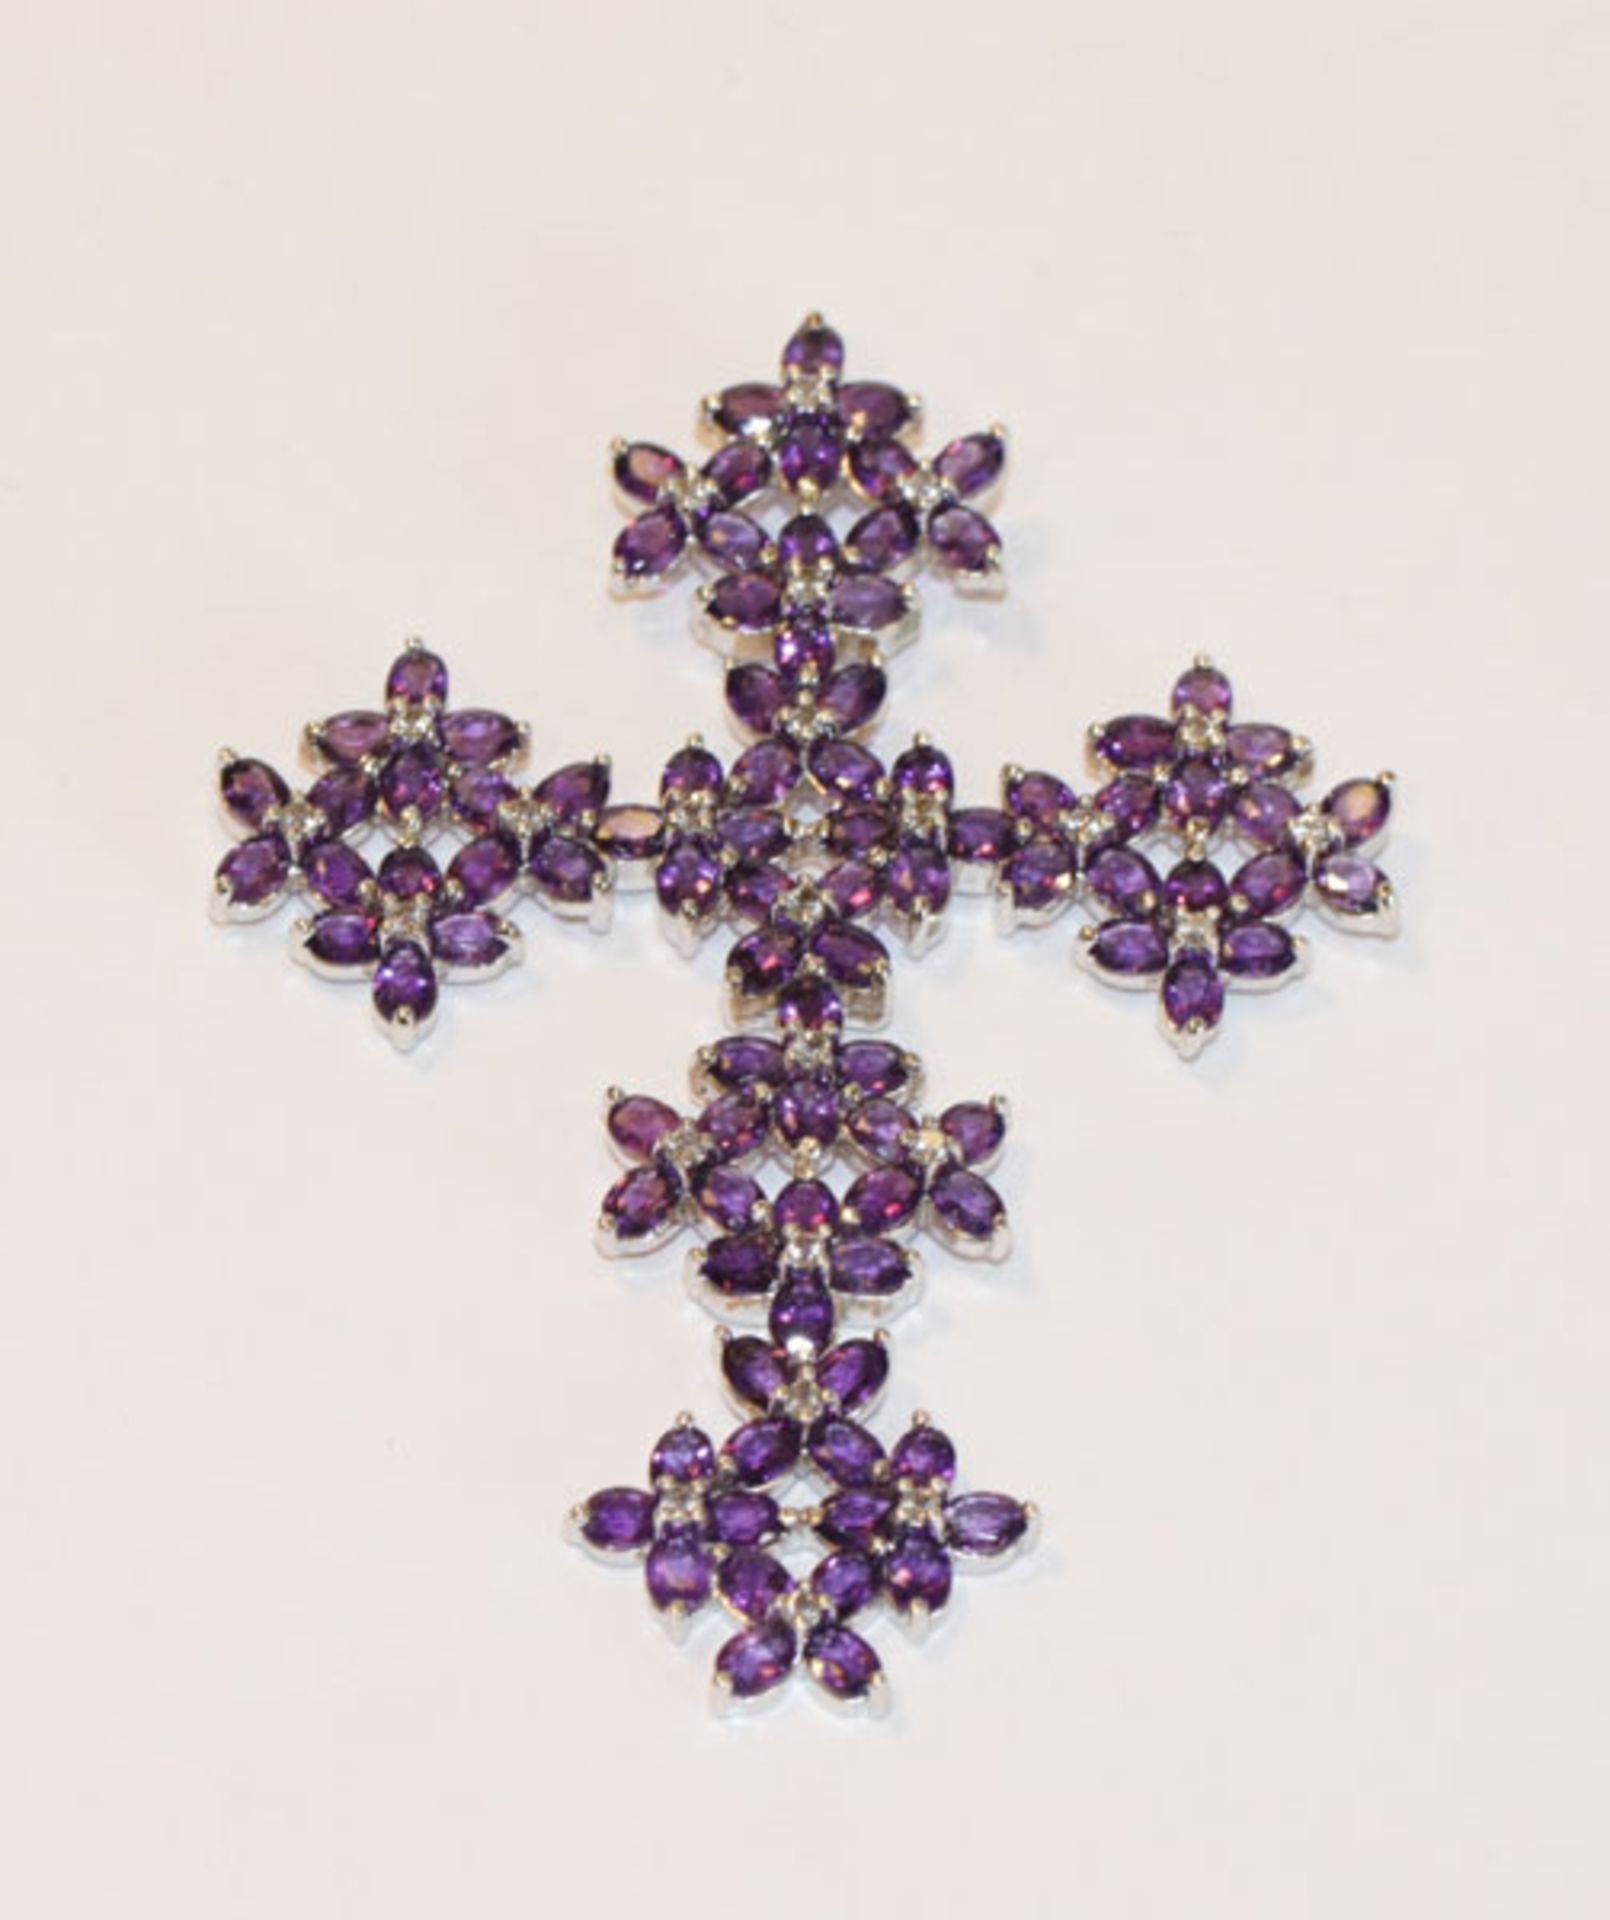 Sterlingsilber Kreuzanhänger mit Amethysten in Blütenform L 7,5 cm, B 5,5 cm